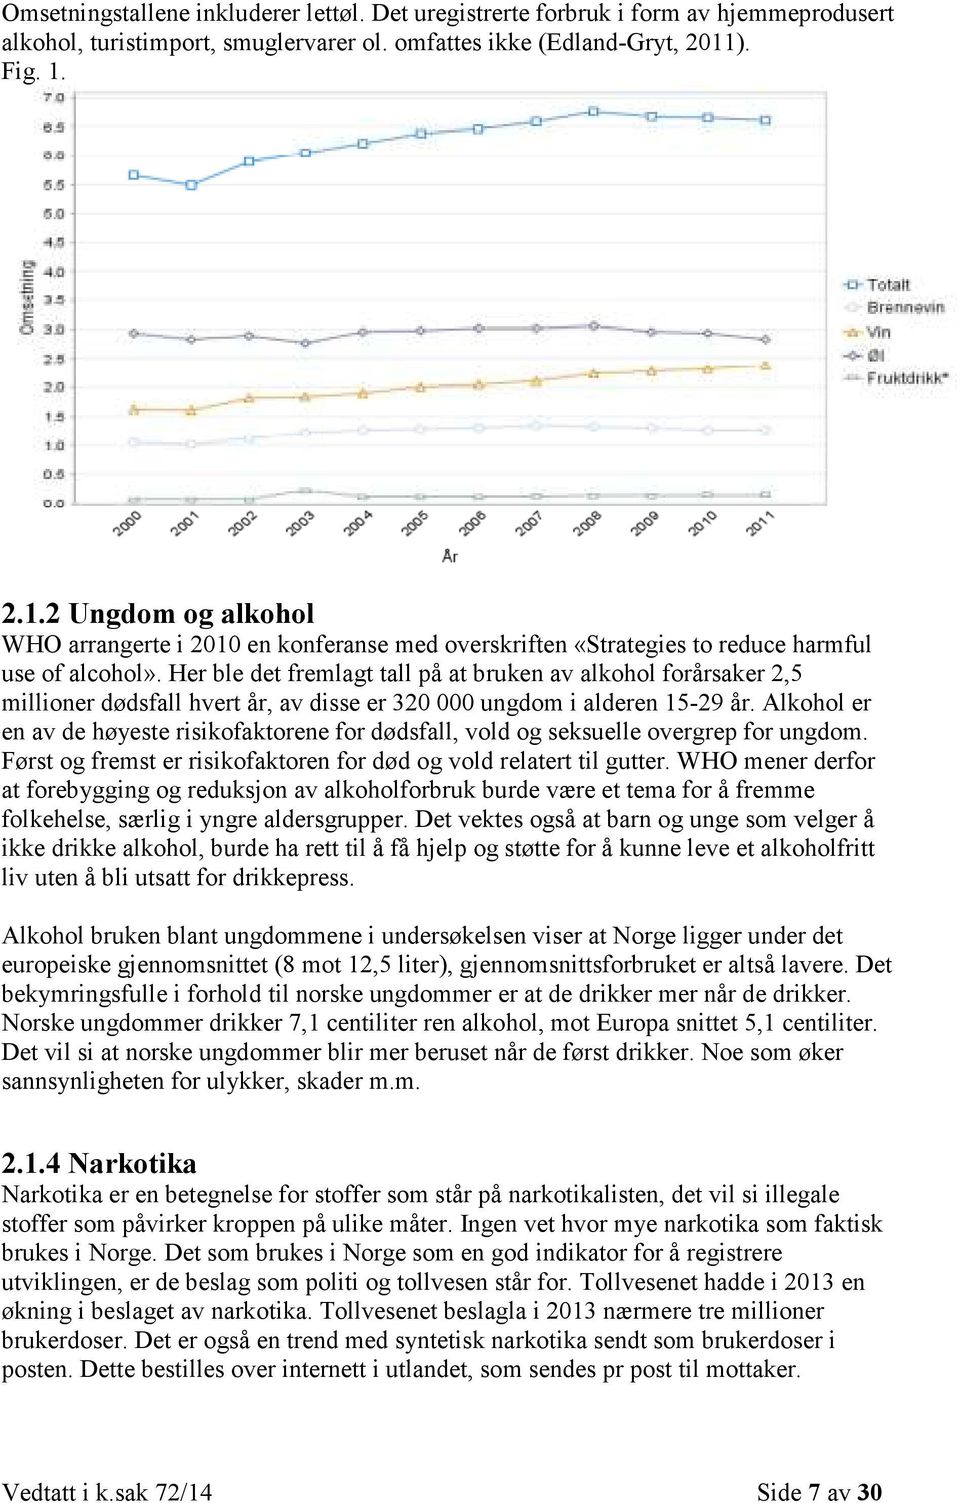 Her ble det fremlagt tall på at bruken av alkohol forårsaker 2,5 millioner dødsfall hvert år, av disse er 320 000 ungdom i alderen 15-29 år.